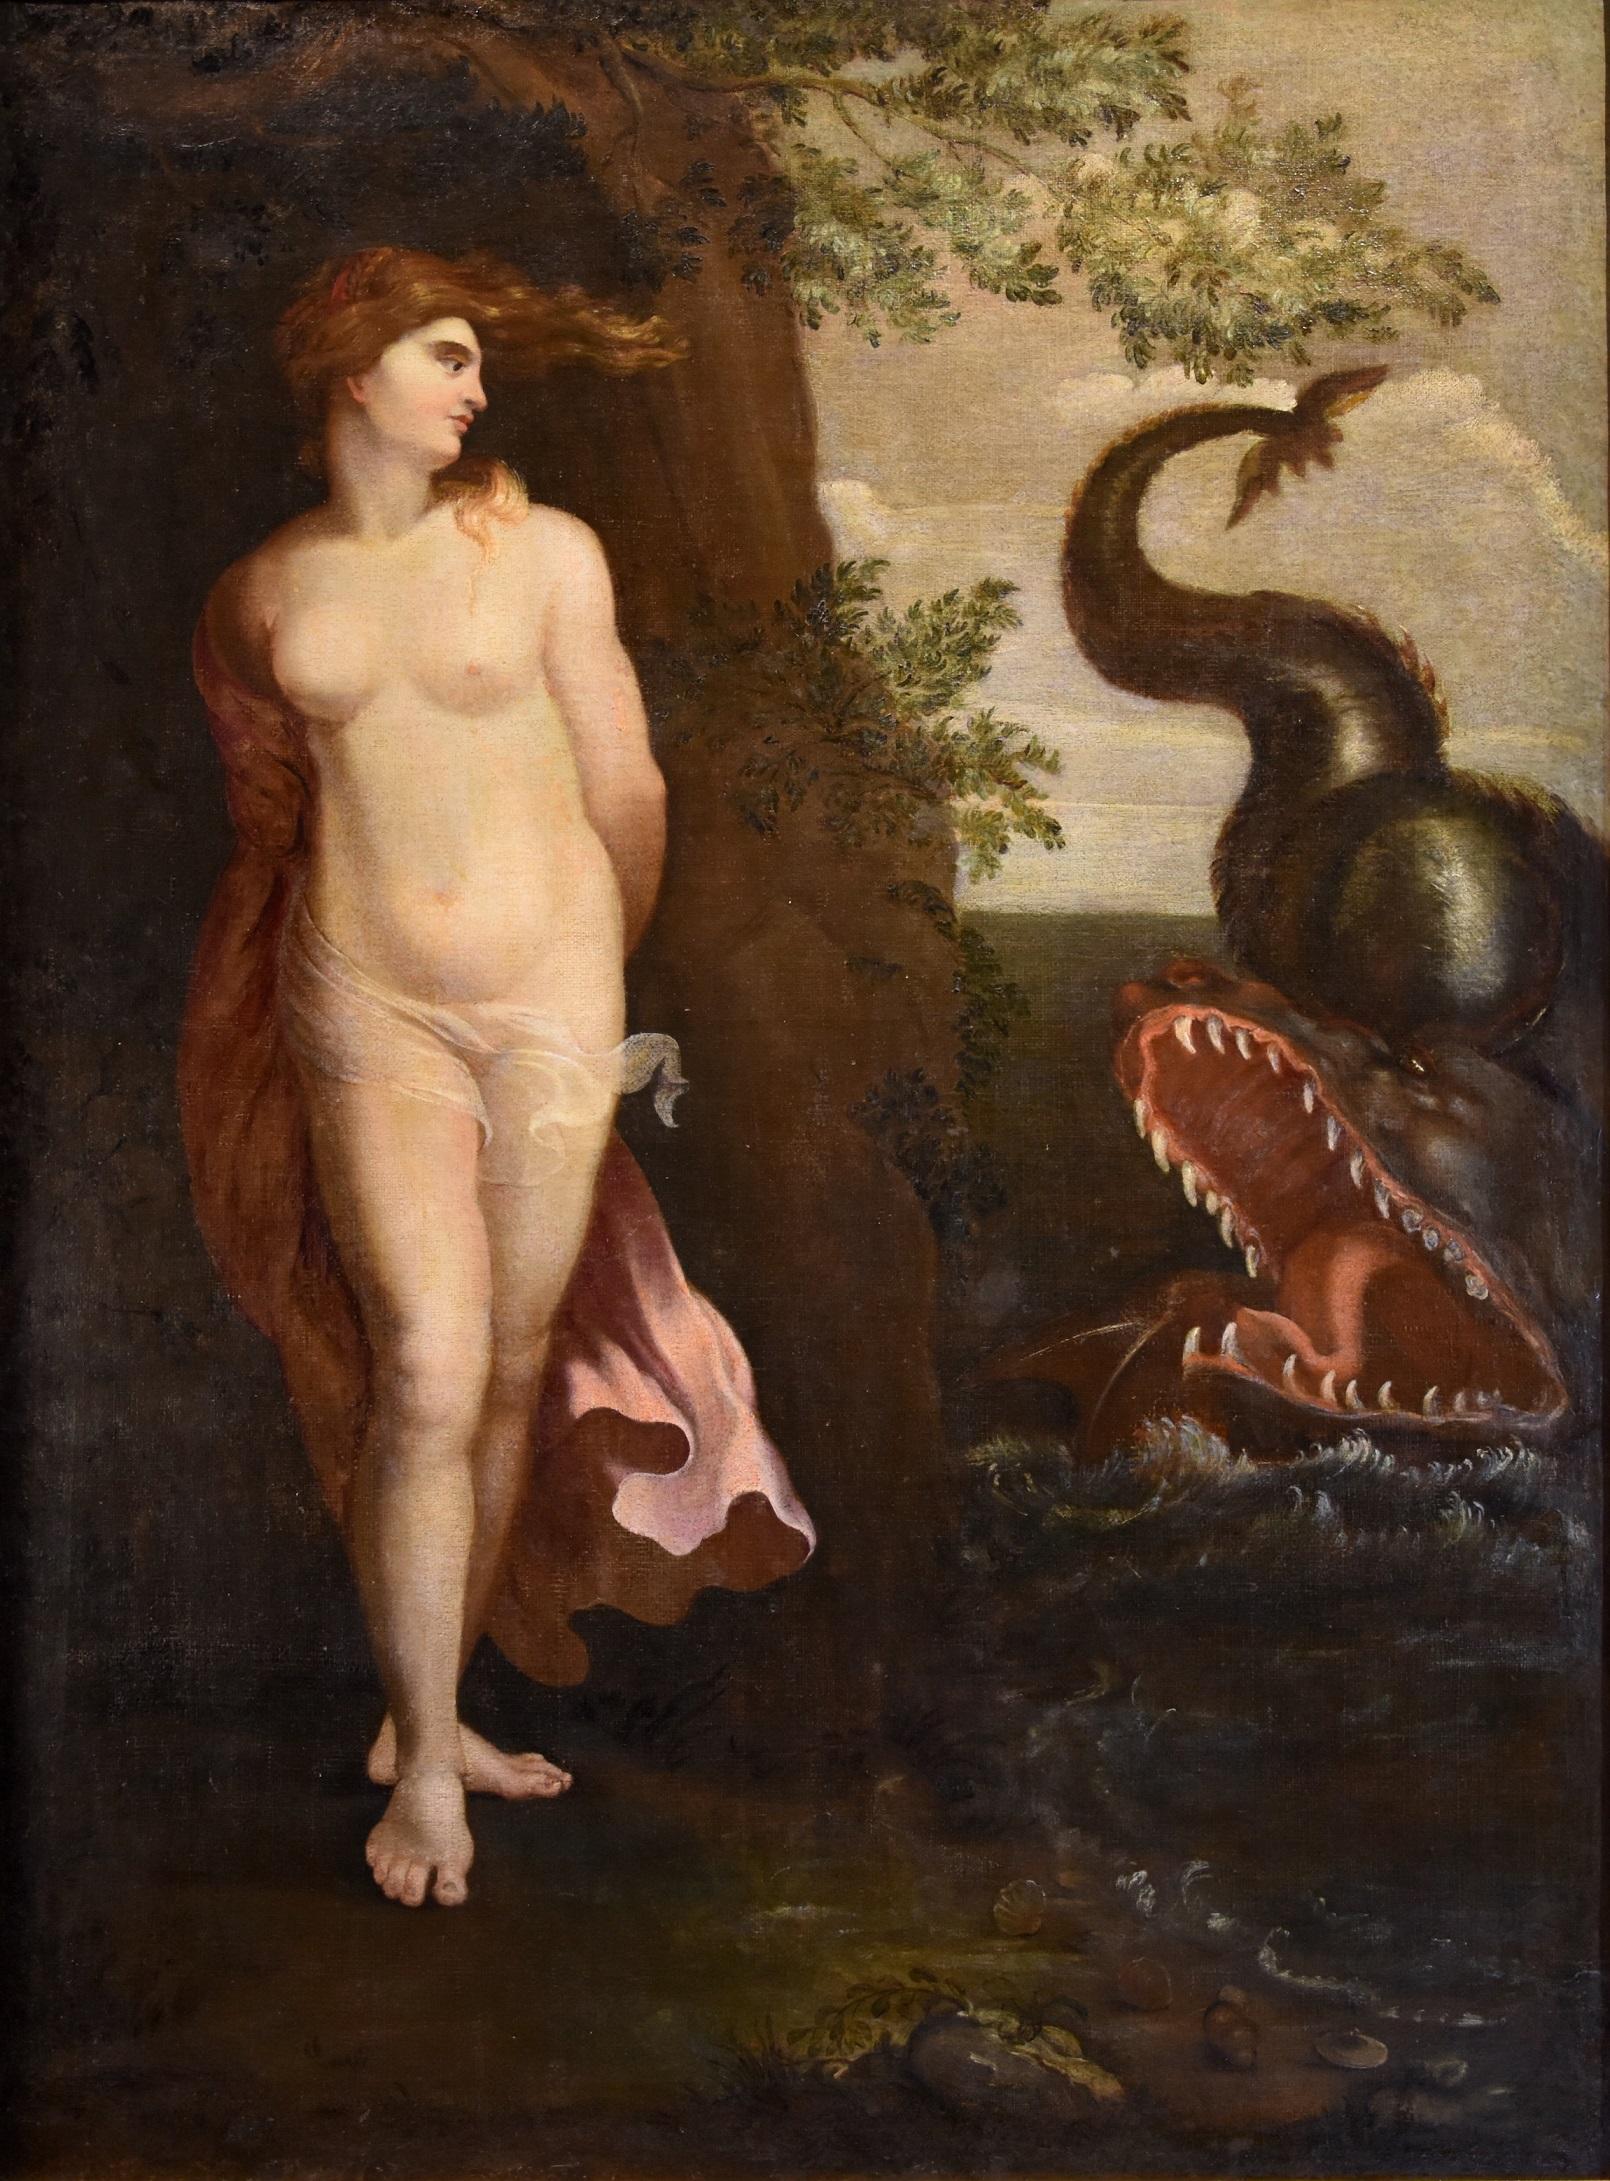 Andromeda Monster, Gemälde, Öl auf Leinwand, Alter Meister, römische Schule, 16./17. Jahrhundert (Alte Meister), Painting, von Painter active in Rome